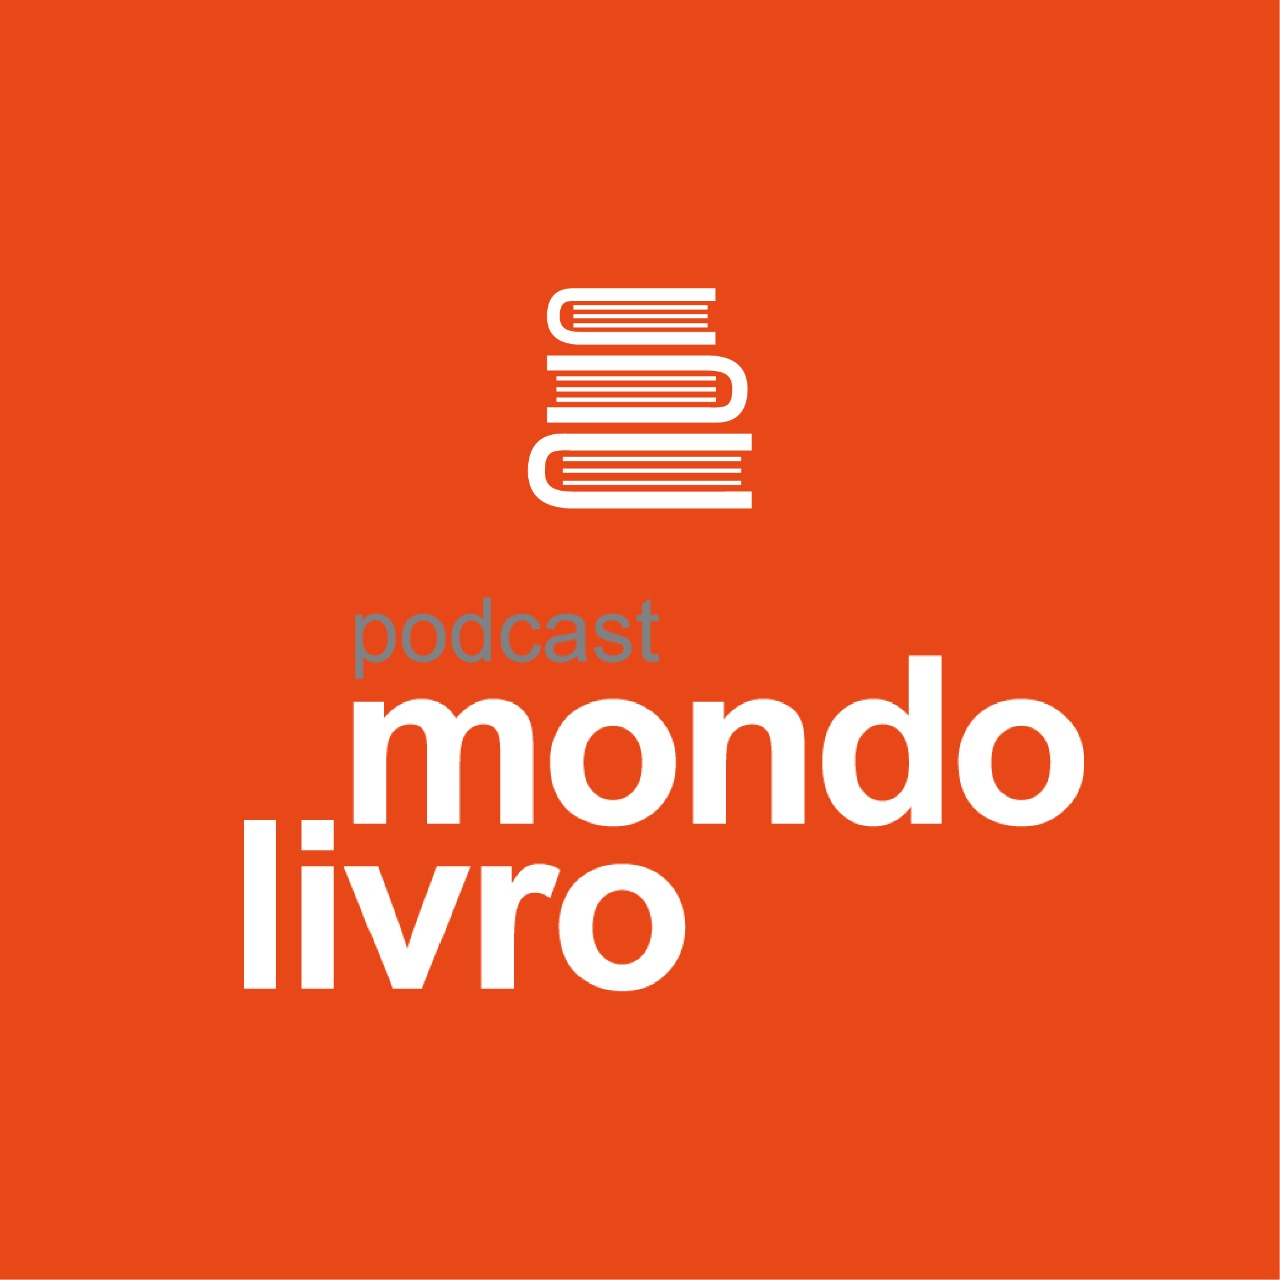 Mondolivro Podcast - Danilo Miranda - uma homenagem em podcast